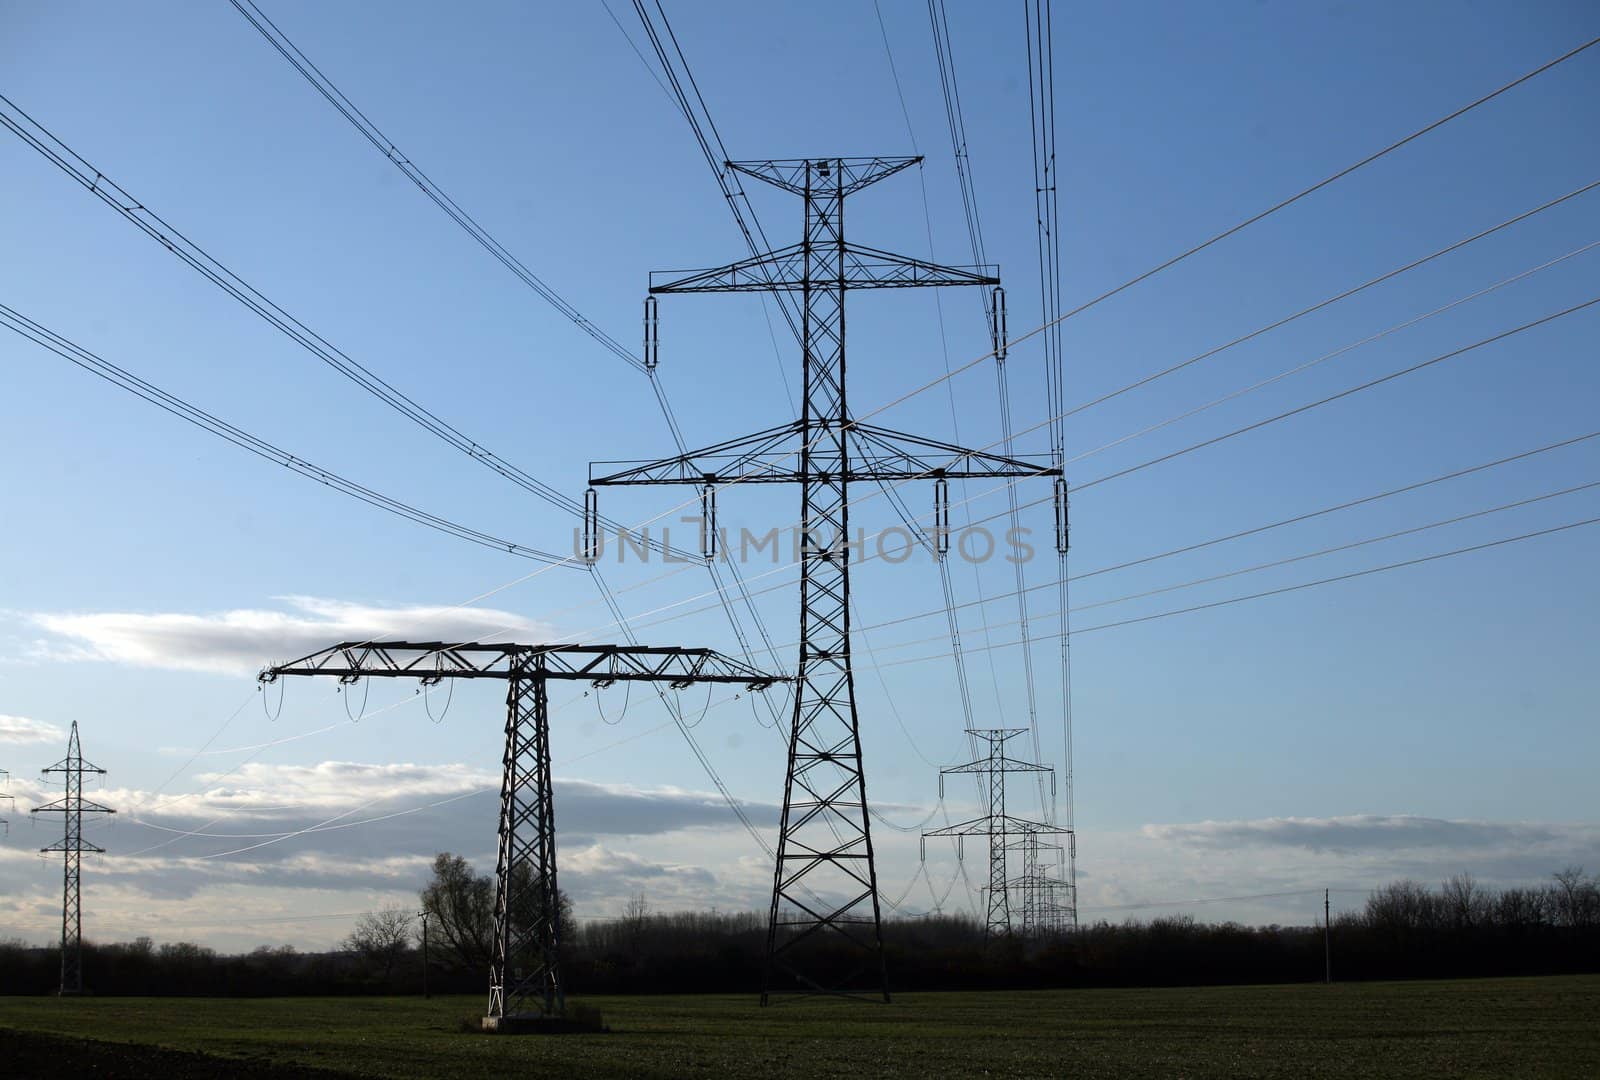 Electric pylons in field by haak78